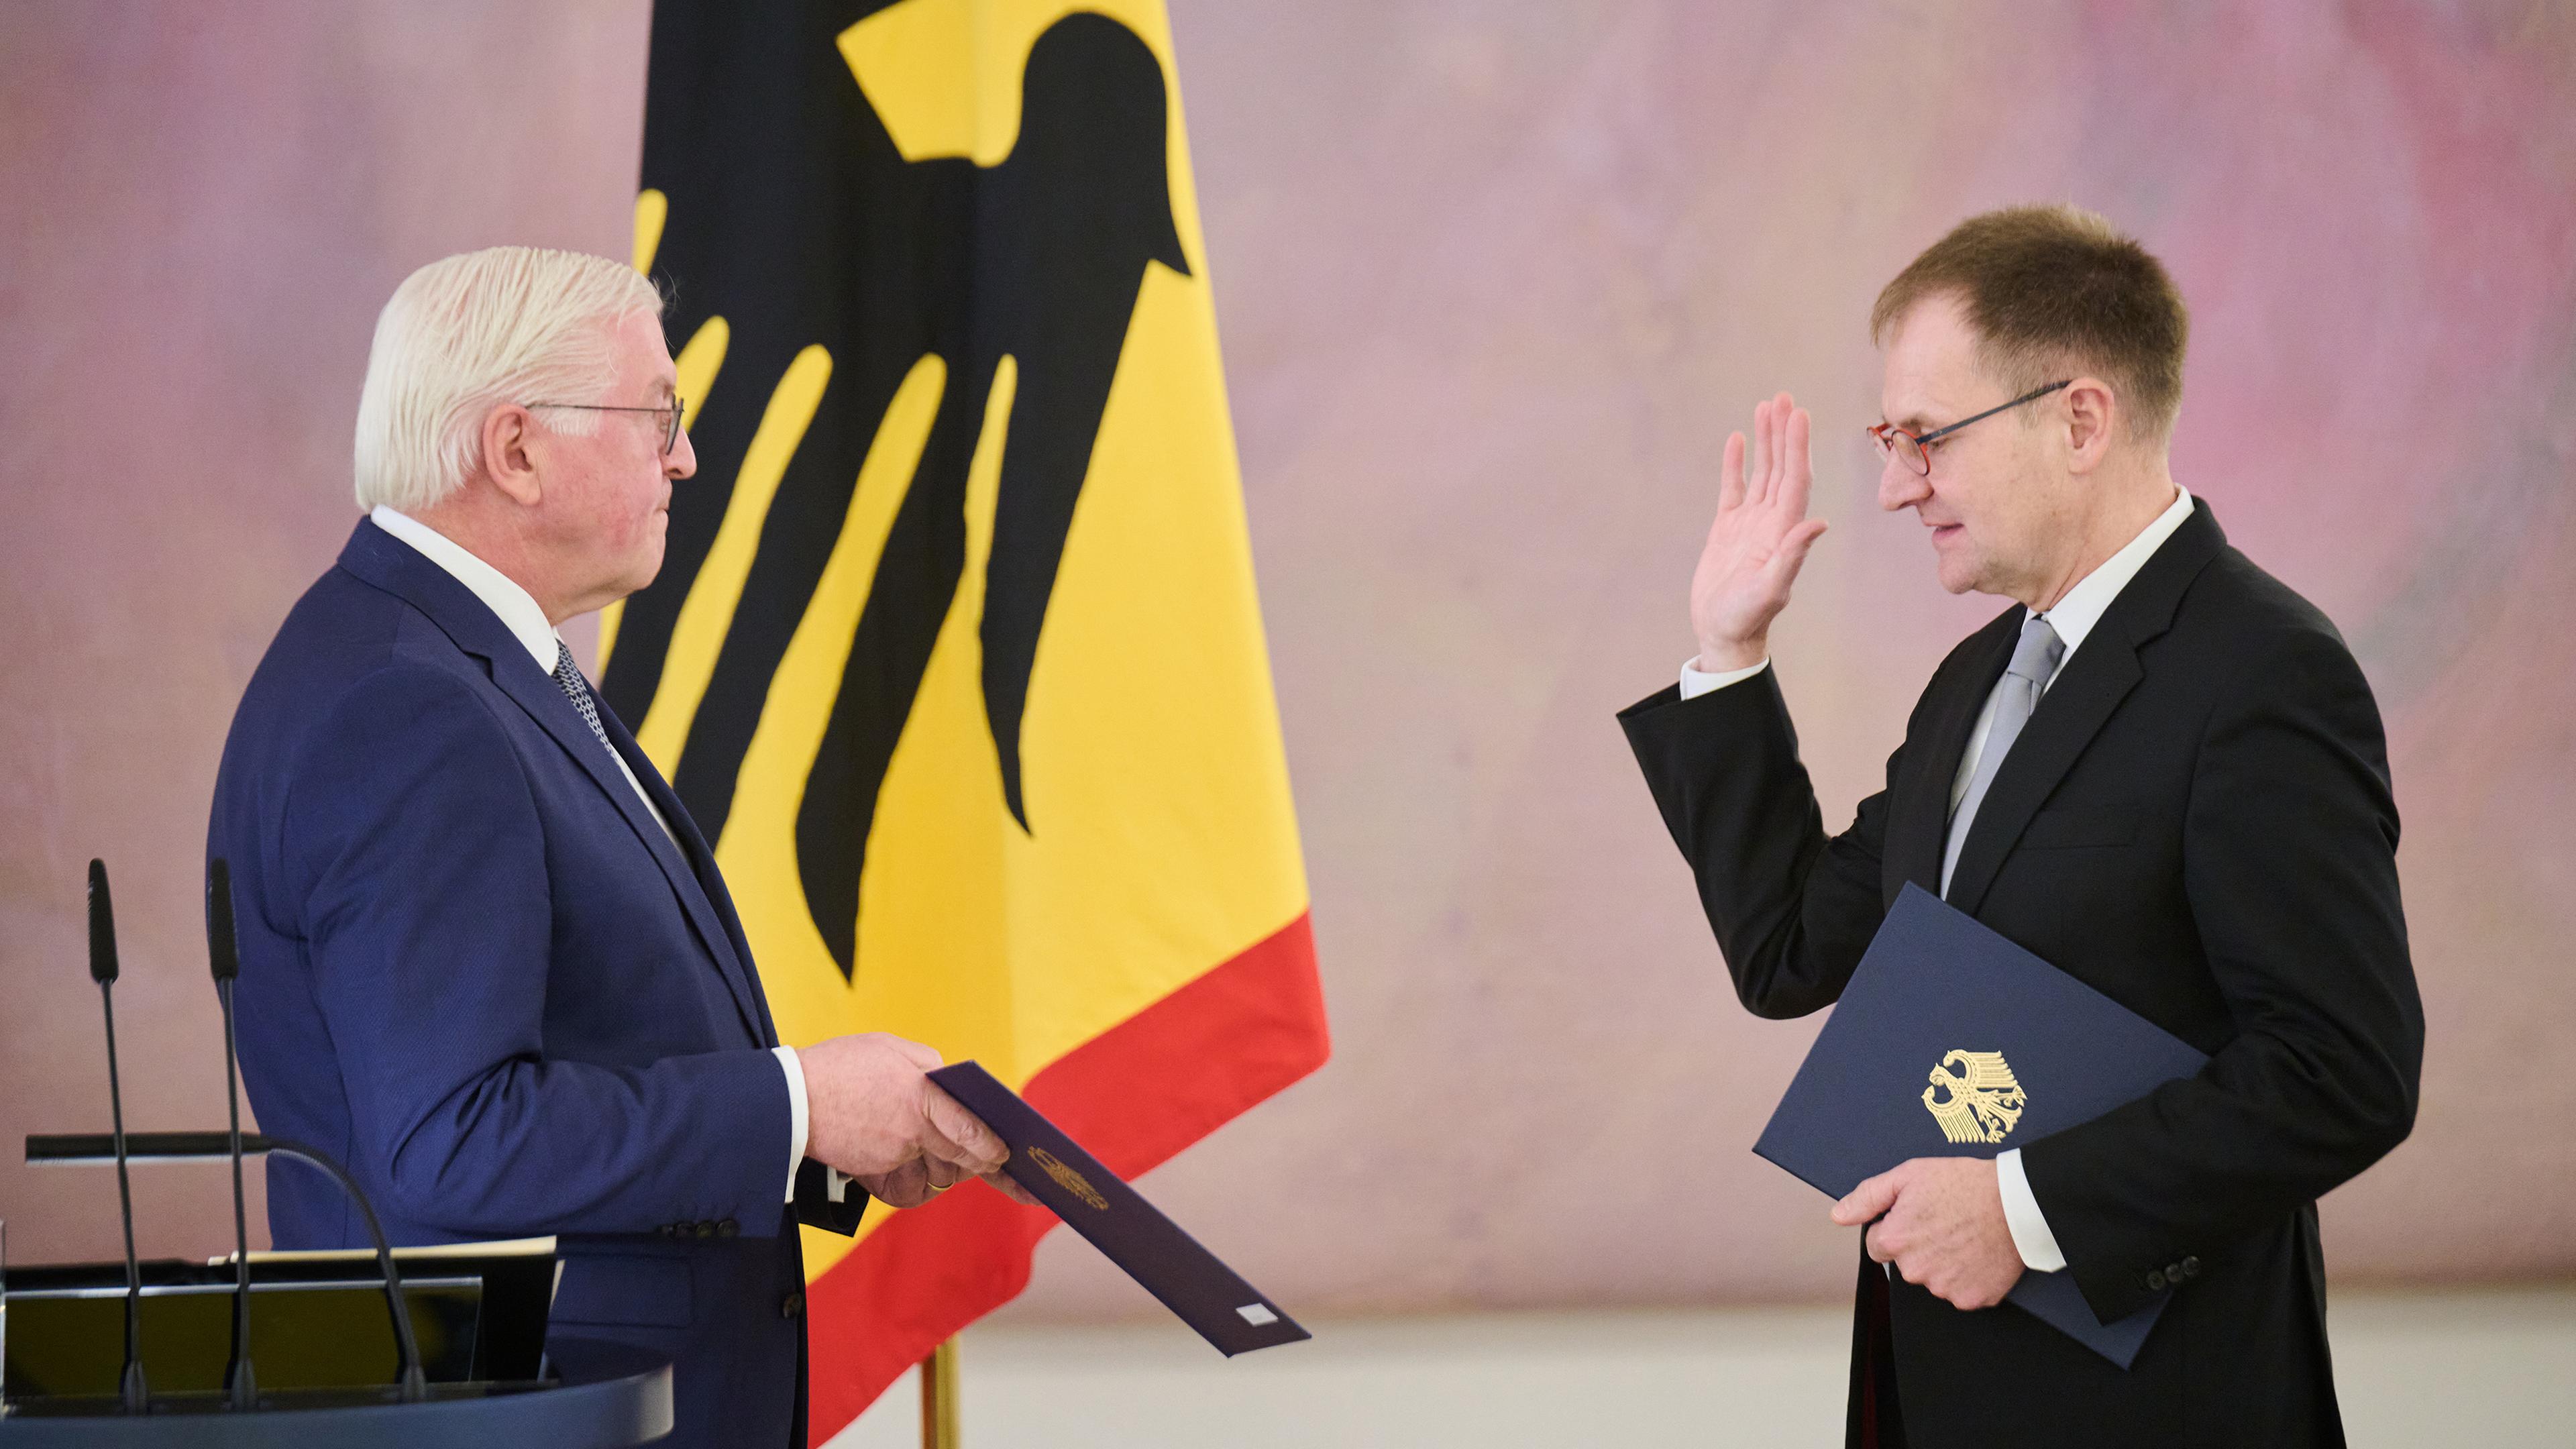 Bundespräsident Steinmeier vereidigt Frank zum neuen Verfassungsrichter im Schloss Bellevue.